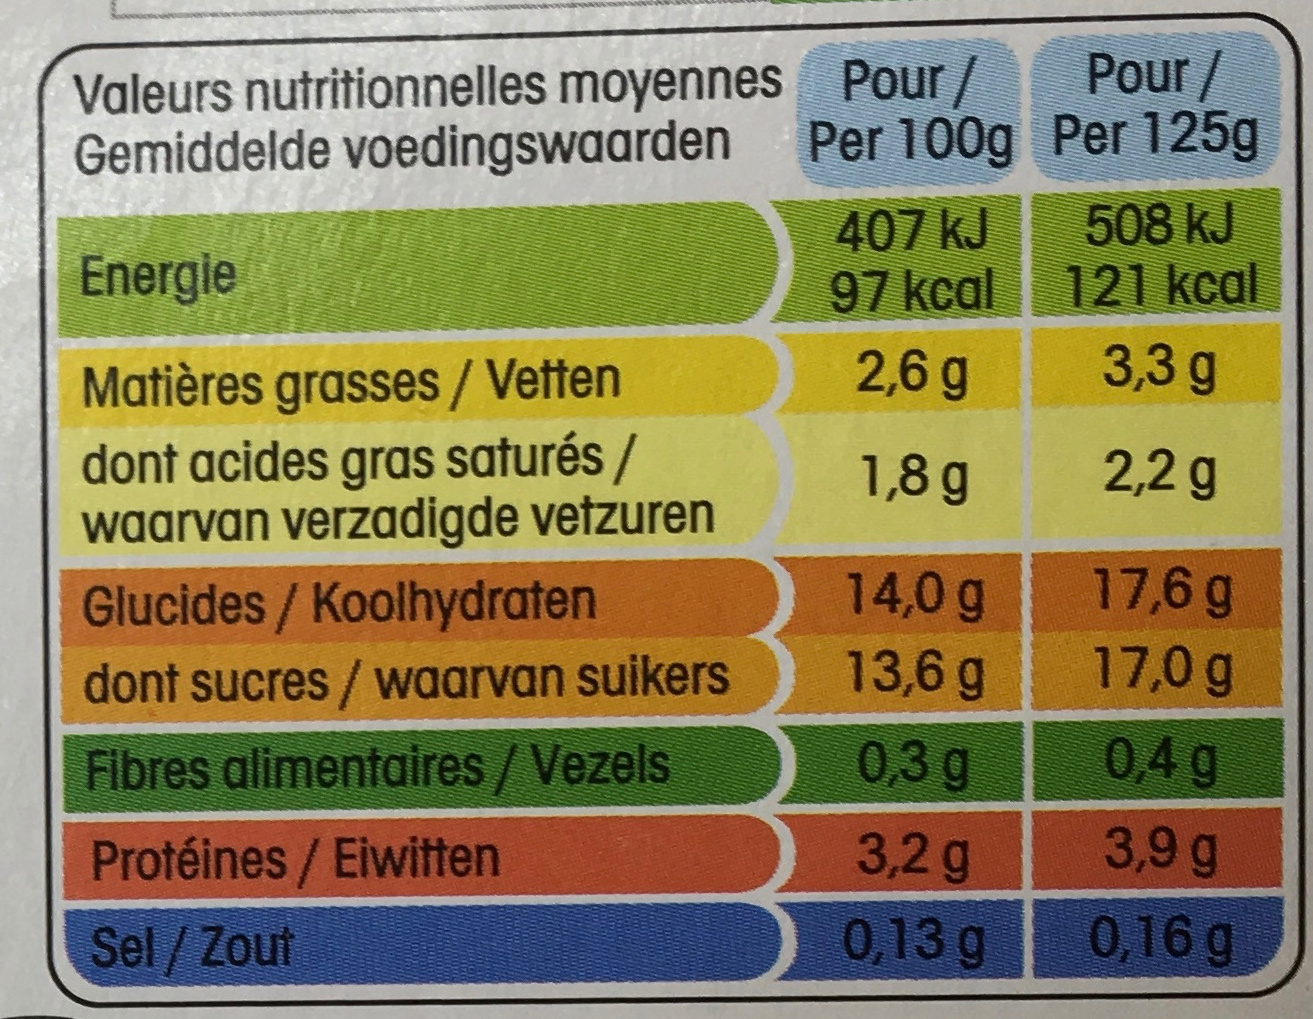 Panier de Yoplait Abricot - Ananas- Pêche - Poire - Tableau nutritionnel